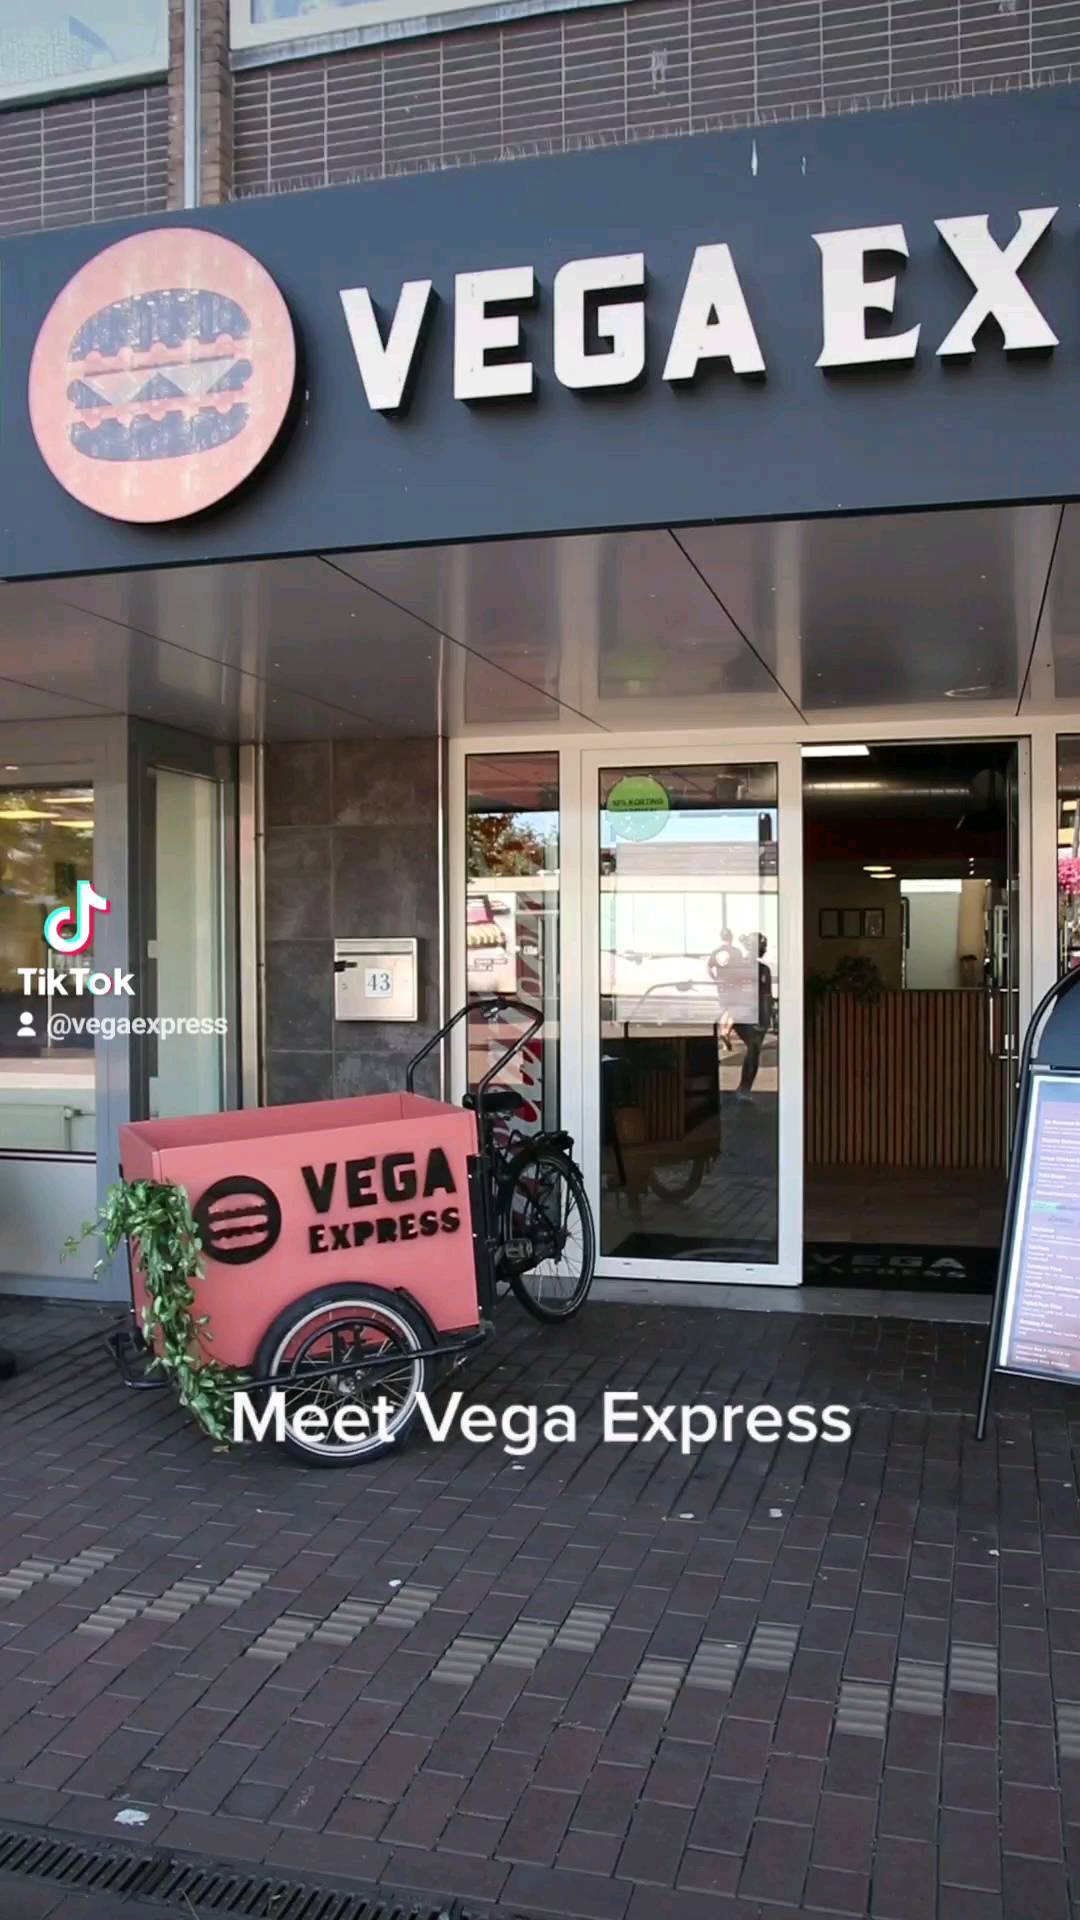 Wist je dat Vega Express het eerste bezorgrestaurant is in Leiden dat alleen vegetarisch en vegan gerechten maakt? 🔥 

Met Vega Express willen wij zoveel mogelijk meatlovers  overtuigen dat vegetarisch eten lekkerder is dan vlees. Je gaat je vlees burger echt nooit meer missen! 

Wij zijn benieuwd: wie van jullie eet steeds meer vegetarisch? ❤